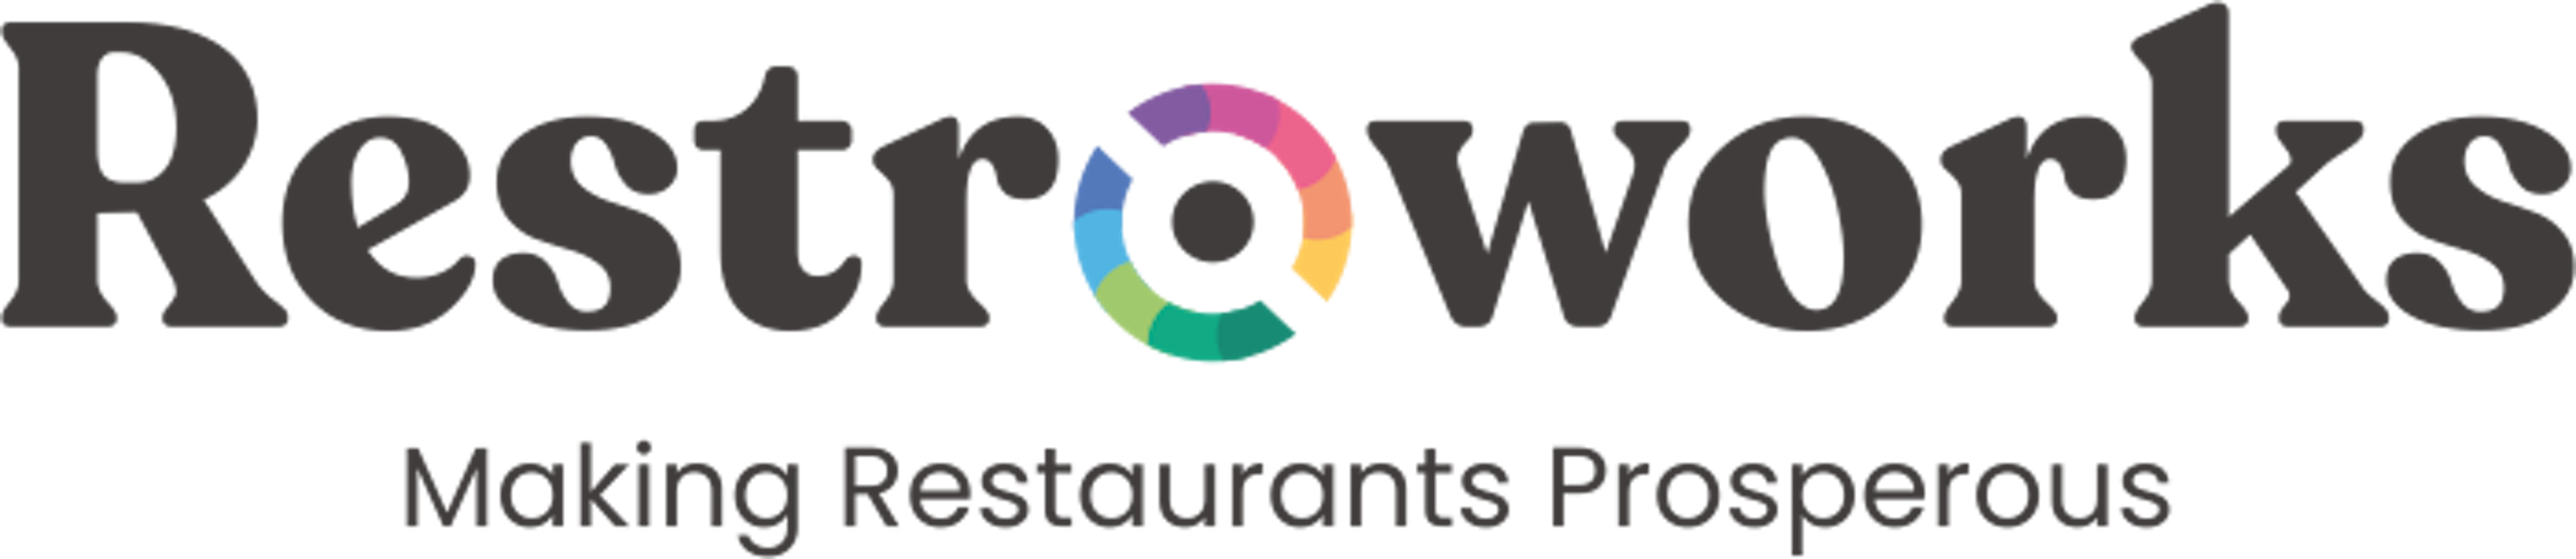 Restroworks Logo